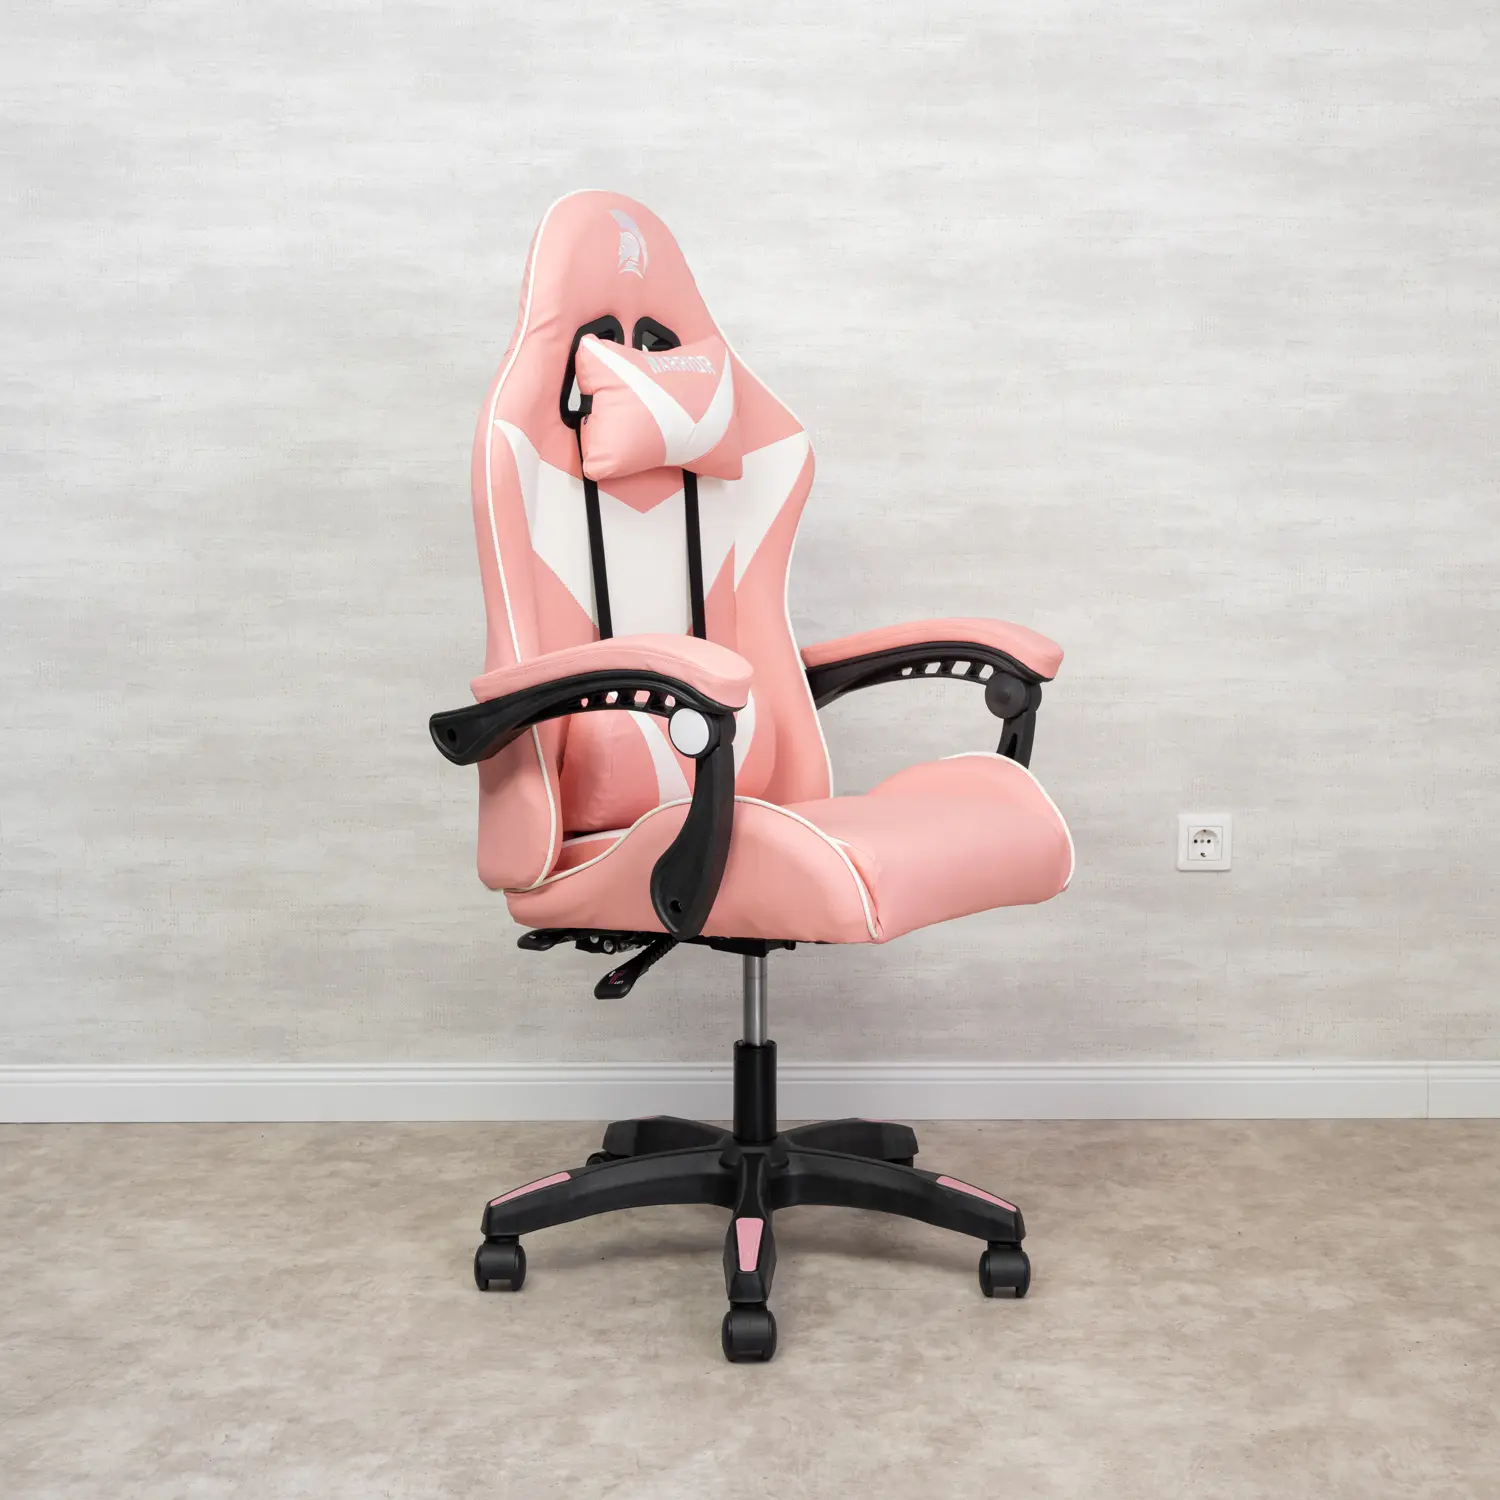 Warrior gamer szék, forgószék fehér-rózsaszín (GAMER-BASIC-4-WHITE-PINK)